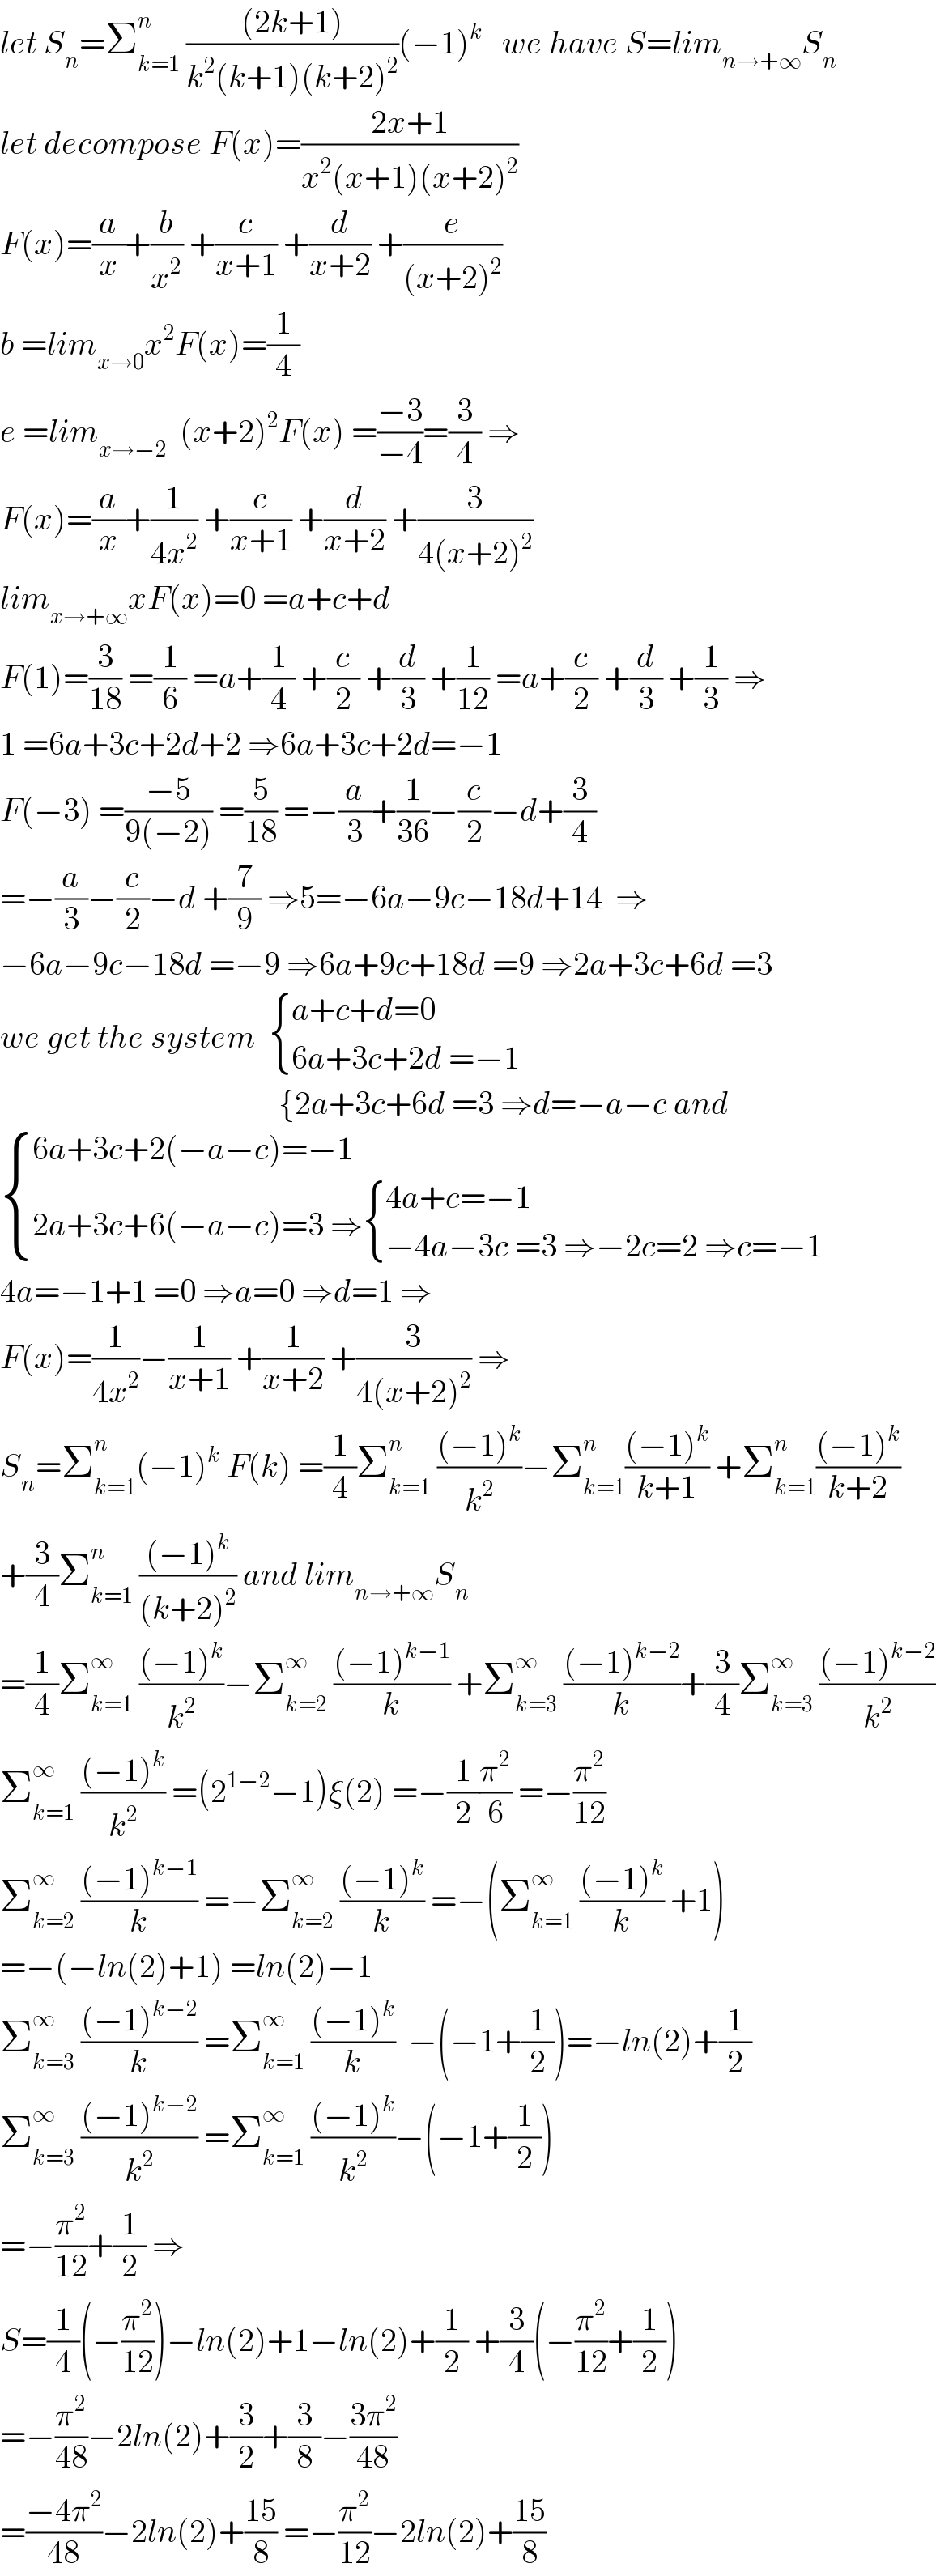 let S_n =Σ_(k=1) ^n  (((2k+1))/(k^2 (k+1)(k+2)^2 ))(−1)^k    we have S=lim_(n→+∞) S_n   let decompose F(x)=((2x+1)/(x^2 (x+1)(x+2)^2 ))  F(x)=(a/x)+(b/x^2 ) +(c/(x+1)) +(d/(x+2)) +(e/((x+2)^2 ))  b =lim_(x→0) x^2 F(x)=(1/4)  e =lim_(x→−2)   (x+2)^2 F(x) =((−3)/(−4))=(3/4) ⇒  F(x)=(a/x)+(1/(4x^2 )) +(c/(x+1)) +(d/(x+2)) +(3/(4(x+2)^2 ))  lim_(x→+∞) xF(x)=0 =a+c+d  F(1)=(3/(18)) =(1/6) =a+(1/4) +(c/2) +(d/3) +(1/(12)) =a+(c/2) +(d/3) +(1/3) ⇒  1 =6a+3c+2d+2 ⇒6a+3c+2d=−1  F(−3) =((−5)/(9(−2))) =(5/(18)) =−(a/3)+(1/(36))−(c/2)−d+(3/4)  =−(a/3)−(c/2)−d +(7/9) ⇒5=−6a−9c−18d+14  ⇒  −6a−9c−18d =−9 ⇒6a+9c+18d =9 ⇒2a+3c+6d =3  we get the system   { ((a+c+d=0)),((6a+3c+2d =−1)) :}                                             {2a+3c+6d =3 ⇒d=−a−c and   { ((6a+3c+2(−a−c)=−1)),((2a+3c+6(−a−c)=3 ⇒ { ((4a+c=−1)),((−4a−3c =3 ⇒−2c=2 ⇒c=−1)) :})) :}  4a=−1+1 =0 ⇒a=0 ⇒d=1 ⇒  F(x)=(1/(4x^2 ))−(1/(x+1)) +(1/(x+2)) +(3/(4(x+2)^2 )) ⇒  S_n =Σ_(k=1) ^n (−1)^k  F(k) =(1/4)Σ_(k=1) ^n  (((−1)^k )/k^2 )−Σ_(k=1) ^n (((−1)^k )/(k+1)) +Σ_(k=1) ^n (((−1)^k )/(k+2))  +(3/4)Σ_(k=1) ^n  (((−1)^k )/((k+2)^2 )) and lim_(n→+∞) S_n   =(1/4)Σ_(k=1) ^∞  (((−1)^k )/k^2 )−Σ_(k=2) ^∞  (((−1)^(k−1) )/k) +Σ_(k=3) ^∞  (((−1)^(k−2) )/k)+(3/4)Σ_(k=3) ^∞  (((−1)^(k−2) )/k^2 )  Σ_(k=1) ^∞  (((−1)^k )/k^2 ) =(2^(1−2) −1)ξ(2) =−(1/2)(π^2 /6) =−(π^2 /(12))  Σ_(k=2) ^∞  (((−1)^(k−1) )/k) =−Σ_(k=2) ^∞  (((−1)^k )/k) =−(Σ_(k=1) ^∞  (((−1)^k )/k) +1)  =−(−ln(2)+1) =ln(2)−1  Σ_(k=3) ^∞  (((−1)^(k−2) )/k) =Σ_(k=1) ^∞  (((−1)^k )/k)  −(−1+(1/2))=−ln(2)+(1/2)  Σ_(k=3) ^∞  (((−1)^(k−2) )/k^2 ) =Σ_(k=1) ^∞  (((−1)^k )/k^2 )−(−1+(1/2))  =−(π^2 /(12))+(1/2) ⇒  S=(1/4)(−(π^2 /(12)))−ln(2)+1−ln(2)+(1/2) +(3/4)(−(π^2 /(12))+(1/2))  =−(π^2 /(48))−2ln(2)+(3/2)+(3/8)−((3π^2 )/(48))  =((−4π^2 )/(48))−2ln(2)+((15)/8) =−(π^2 /(12))−2ln(2)+((15)/8)  